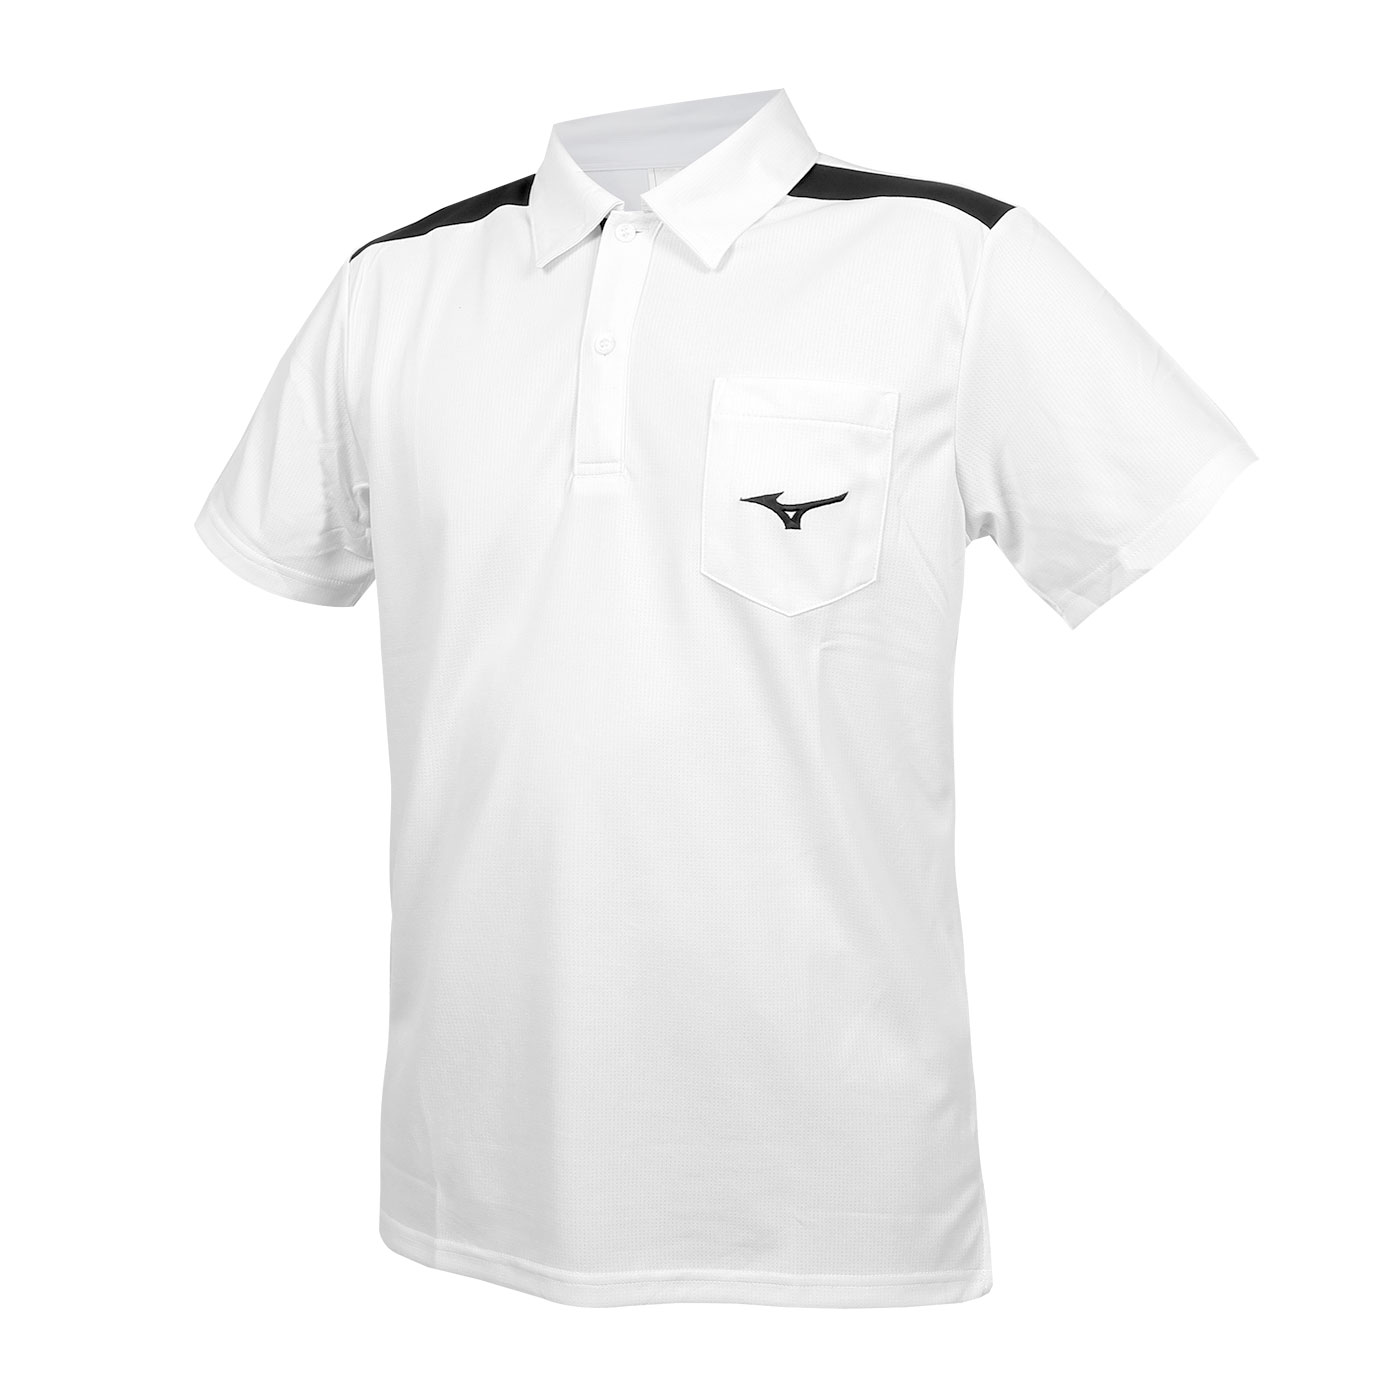 MIZUNO 男款短袖POLO衫  32TAB01501 - 白黑